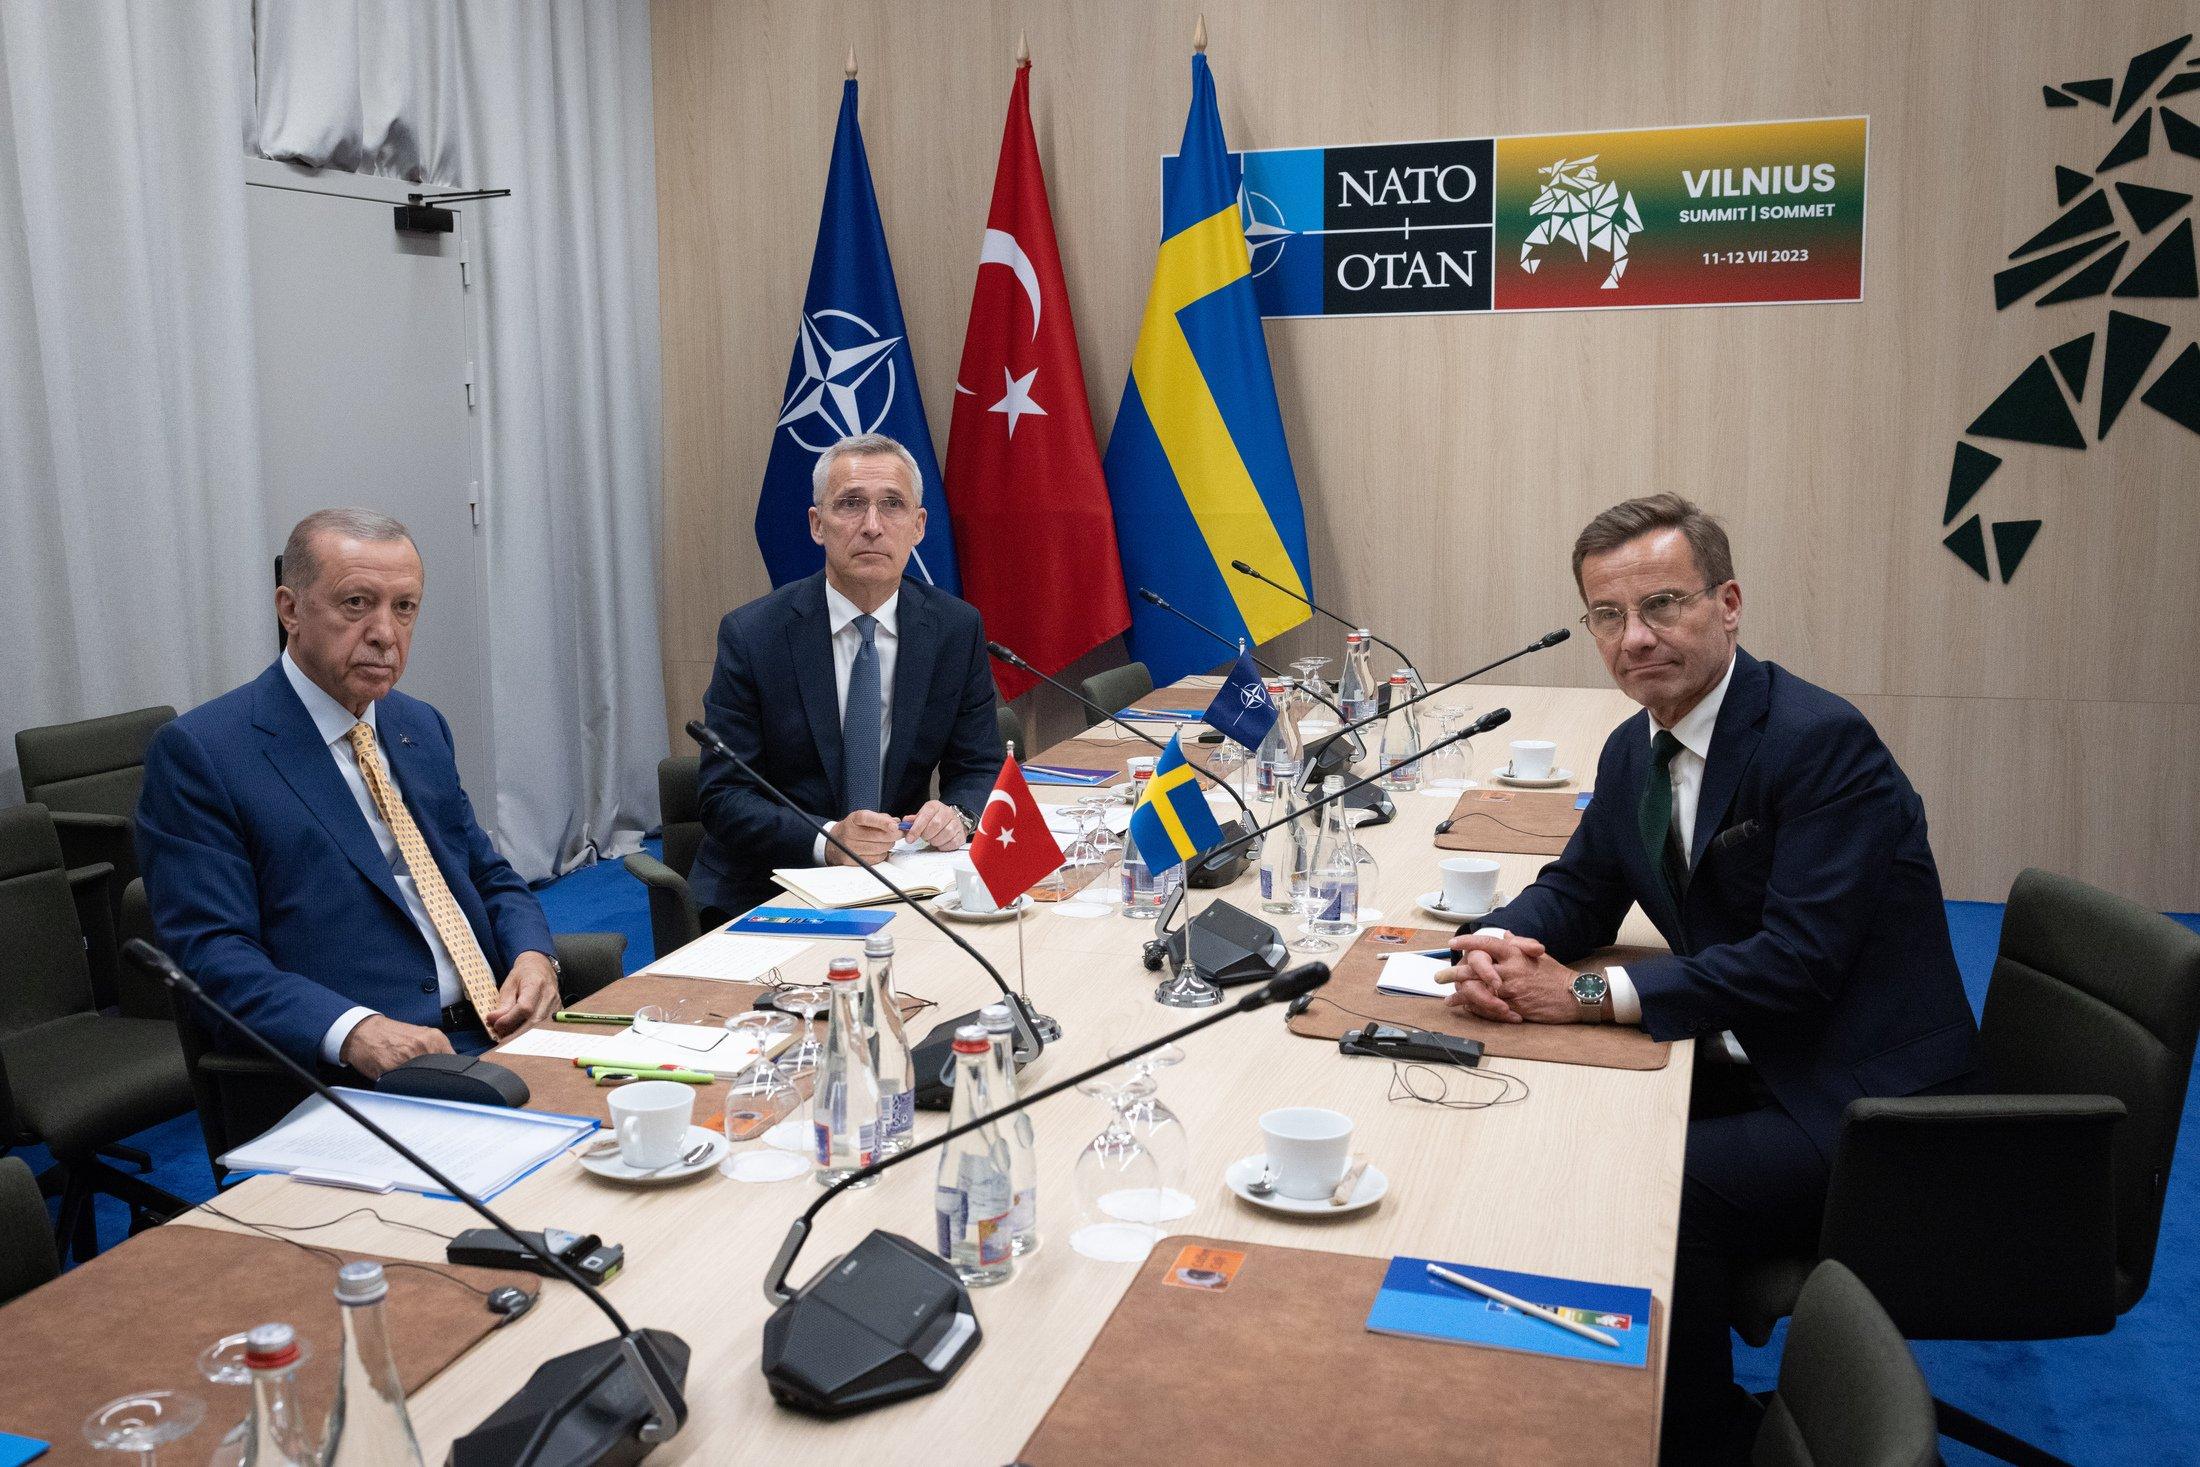 Trzech mężczyzn siedzi przy stole negocjacyjnym, w rogu pomieszczania trzy flagi: flaga NATO, Turcji i Szwecji. Mężczyźni na zdjęciu to od lewej prezydent Turcji Recep Tayyip Erdogan, w środku sekretarz generalny NATO Jens Stoltenberg oraz po przeciwnej stronie stołu premier Szwecji, Ulf Kristersson. Mężczyźni patrzą w obiektyw aparatu, przed nimi trudne rozmowy o odblokowaniu przez Turcję członkostwa Szwecji w Sojuszu.